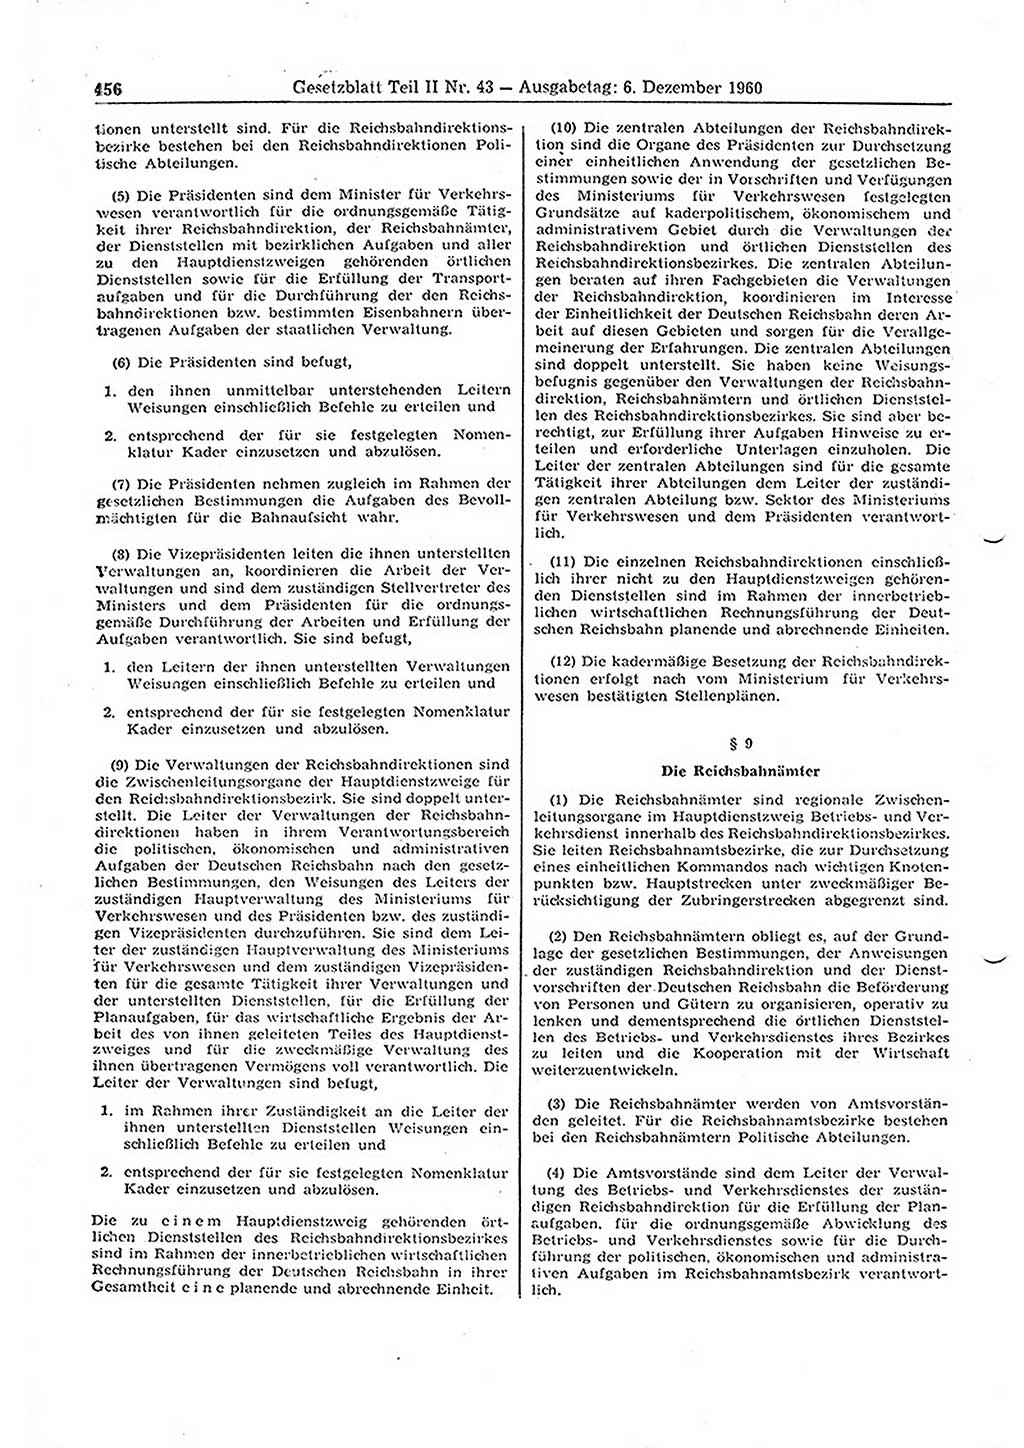 Gesetzblatt (GBl.) der Deutschen Demokratischen Republik (DDR) Teil ⅠⅠ 1960, Seite 456 (GBl. DDR ⅠⅠ 1960, S. 456)